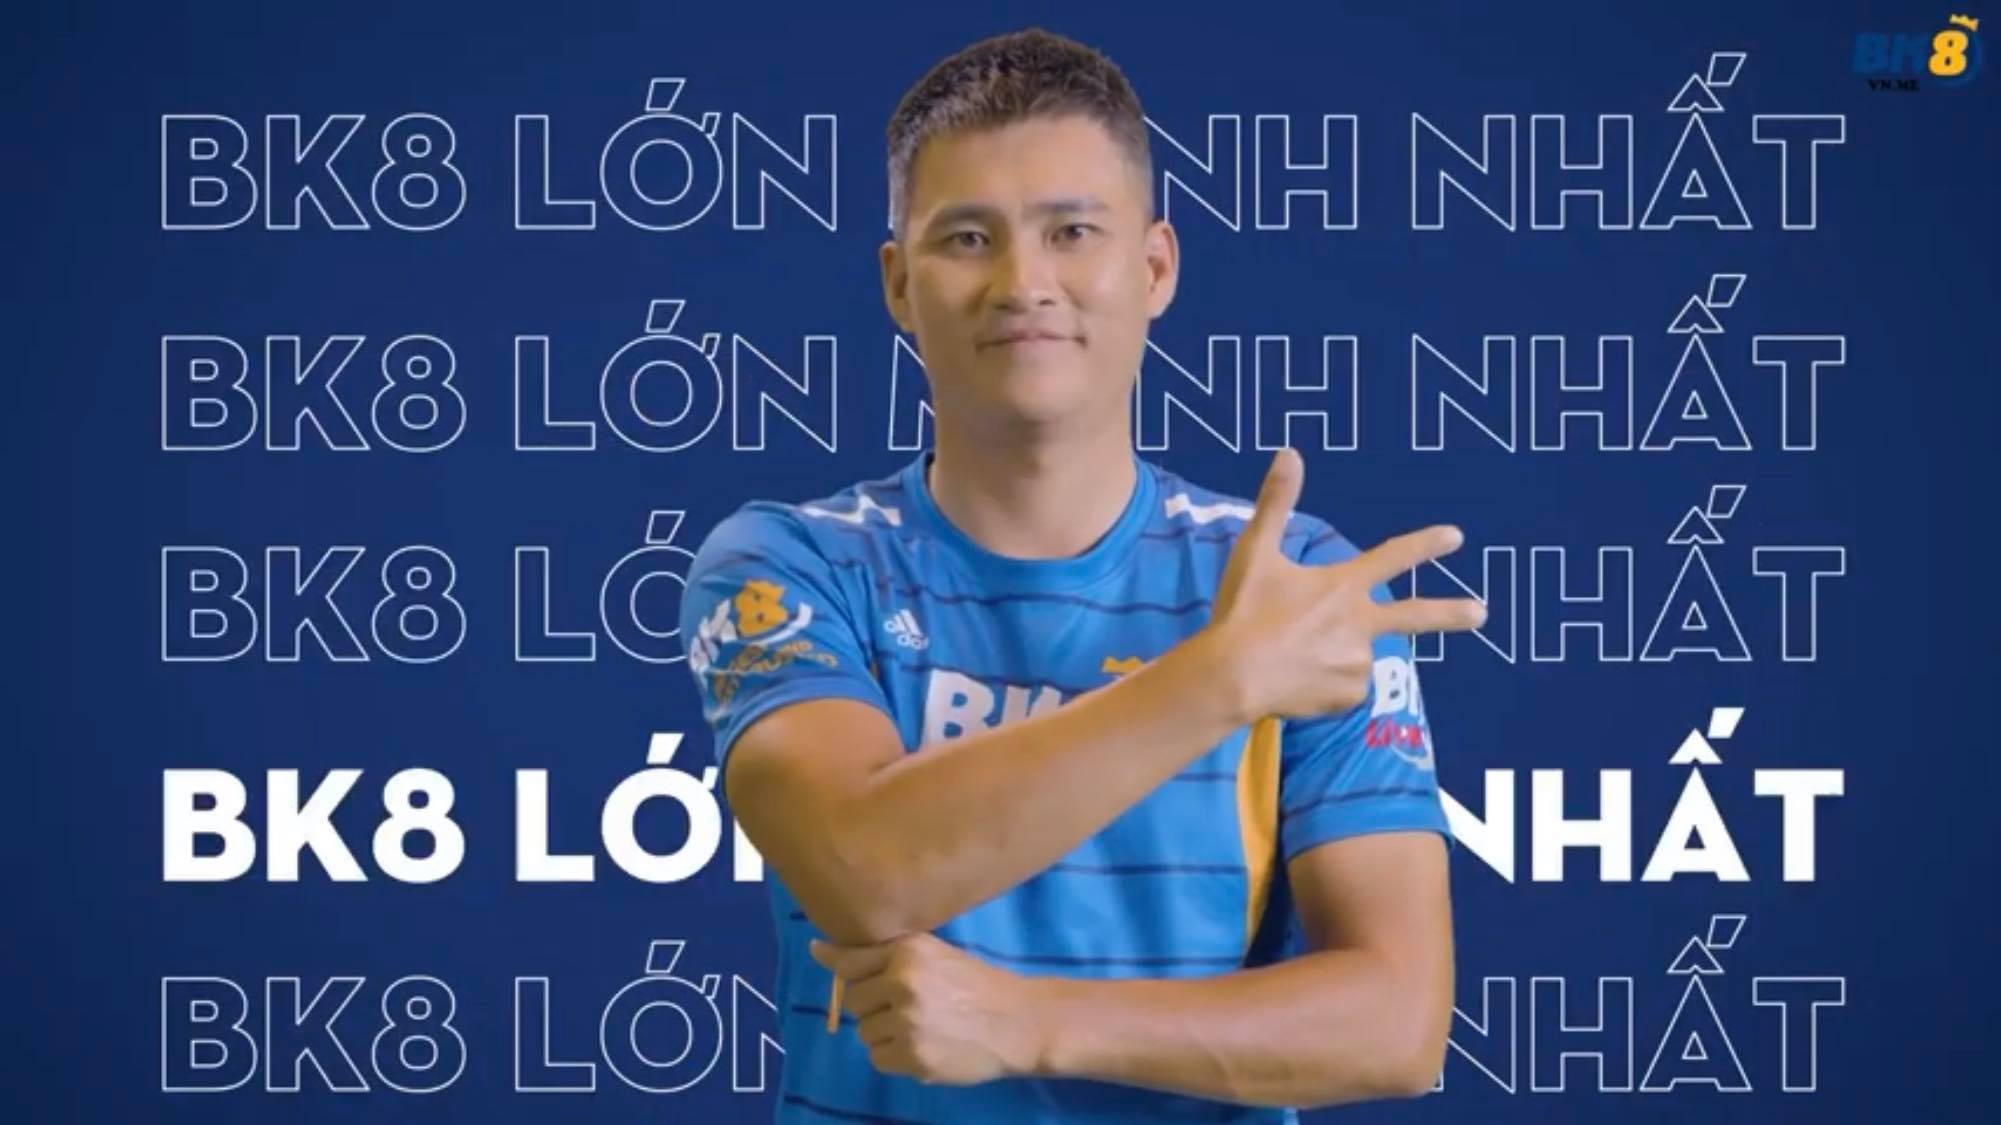 Cầu thủ Lê Công Vinh xuất hiện trong quảng cáo cho ứng dụng cá cược trái phép